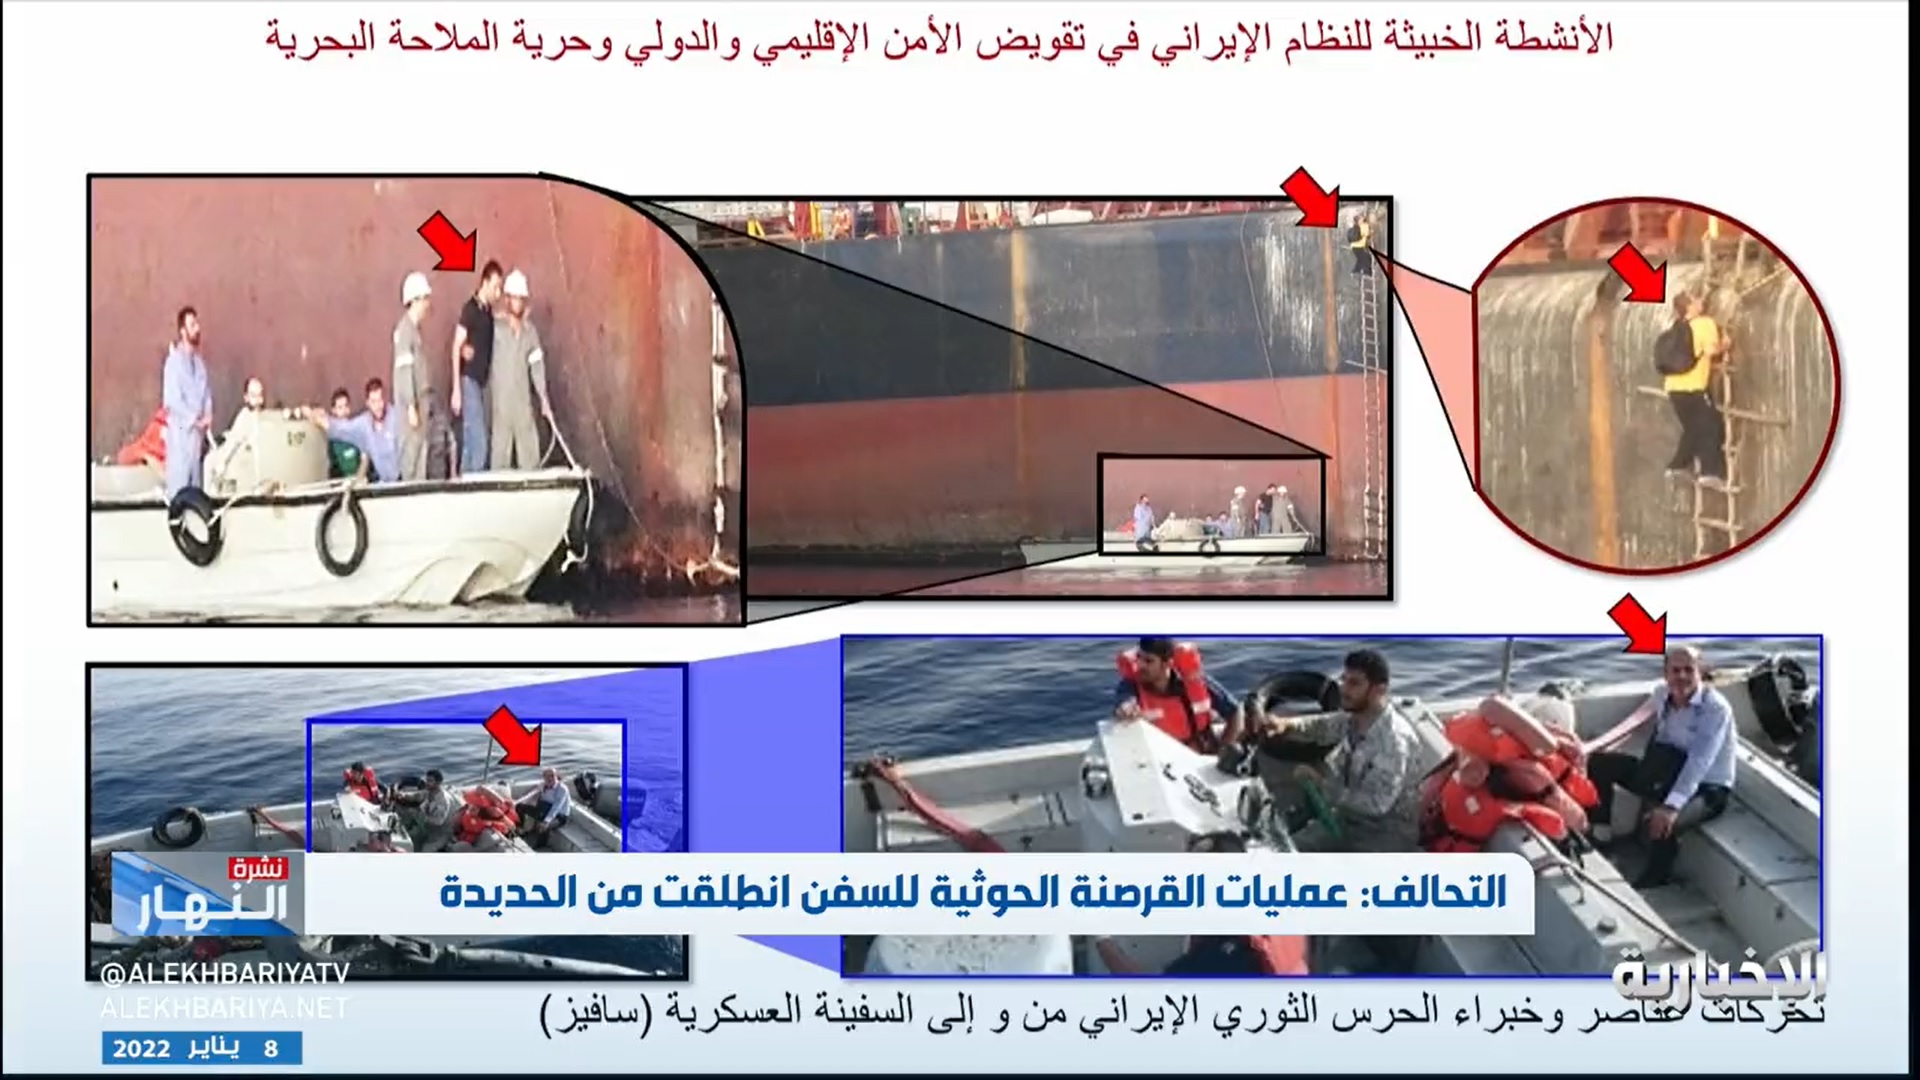 شاهد.. التحالف يعرض صورا لعناصر الحرس الثوري الإيراني الإرهابي من على متن السفينة العسكرية (تباندا)